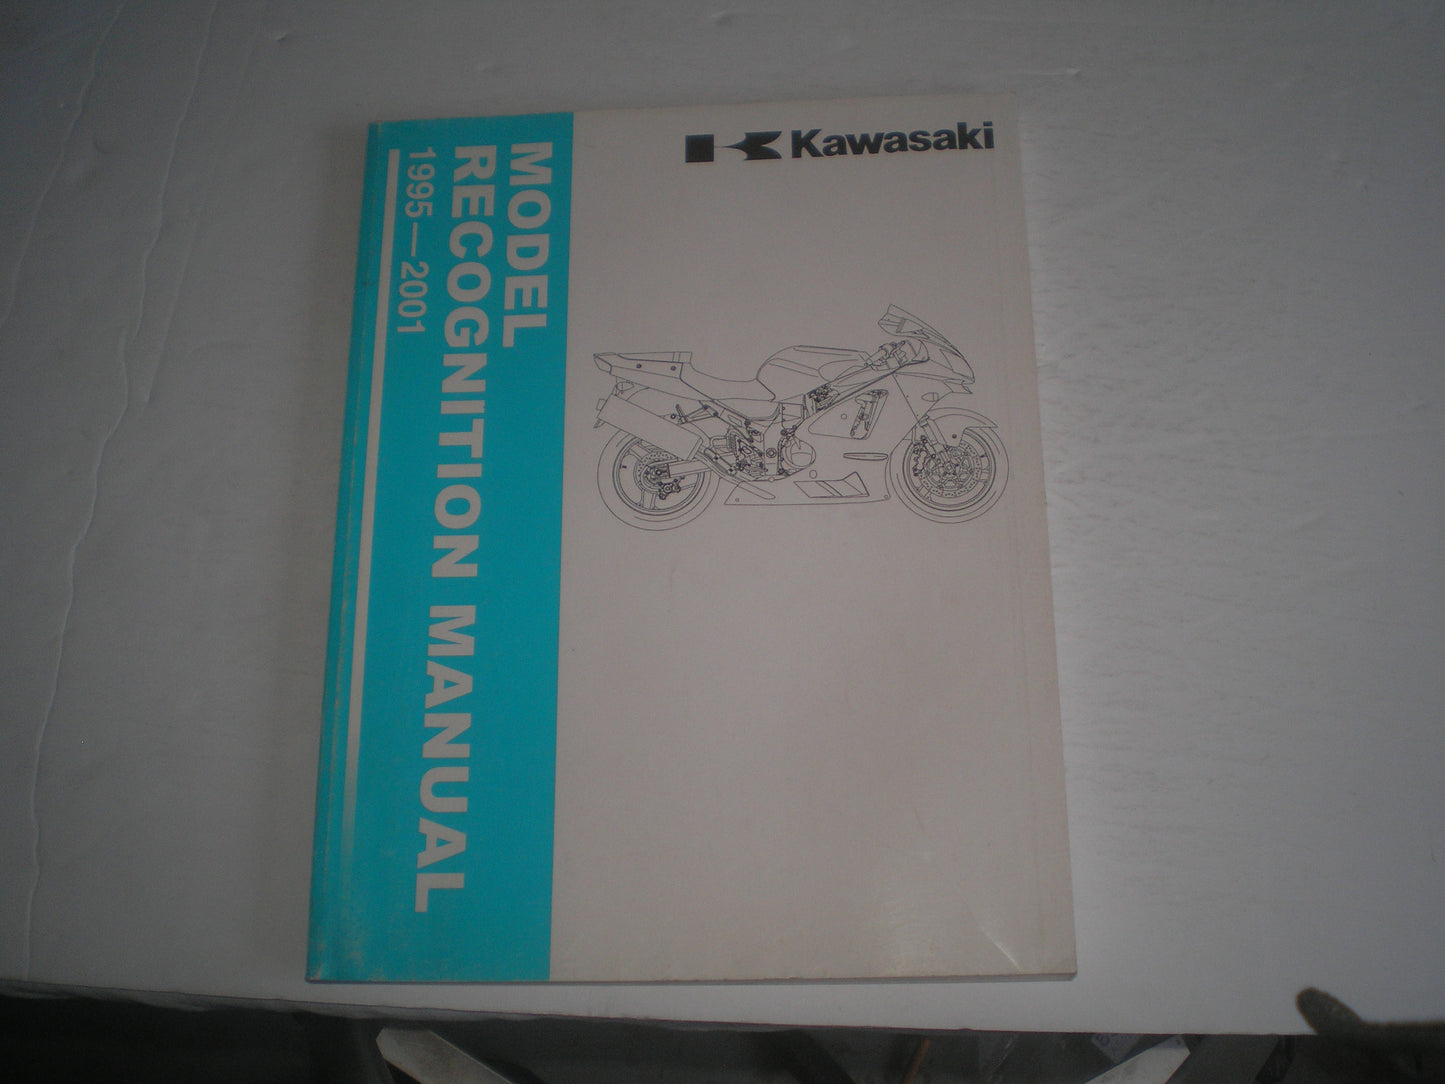 KAWASAKI 1995-2001 Model Recognition Manual  99930-1007-01  #1381